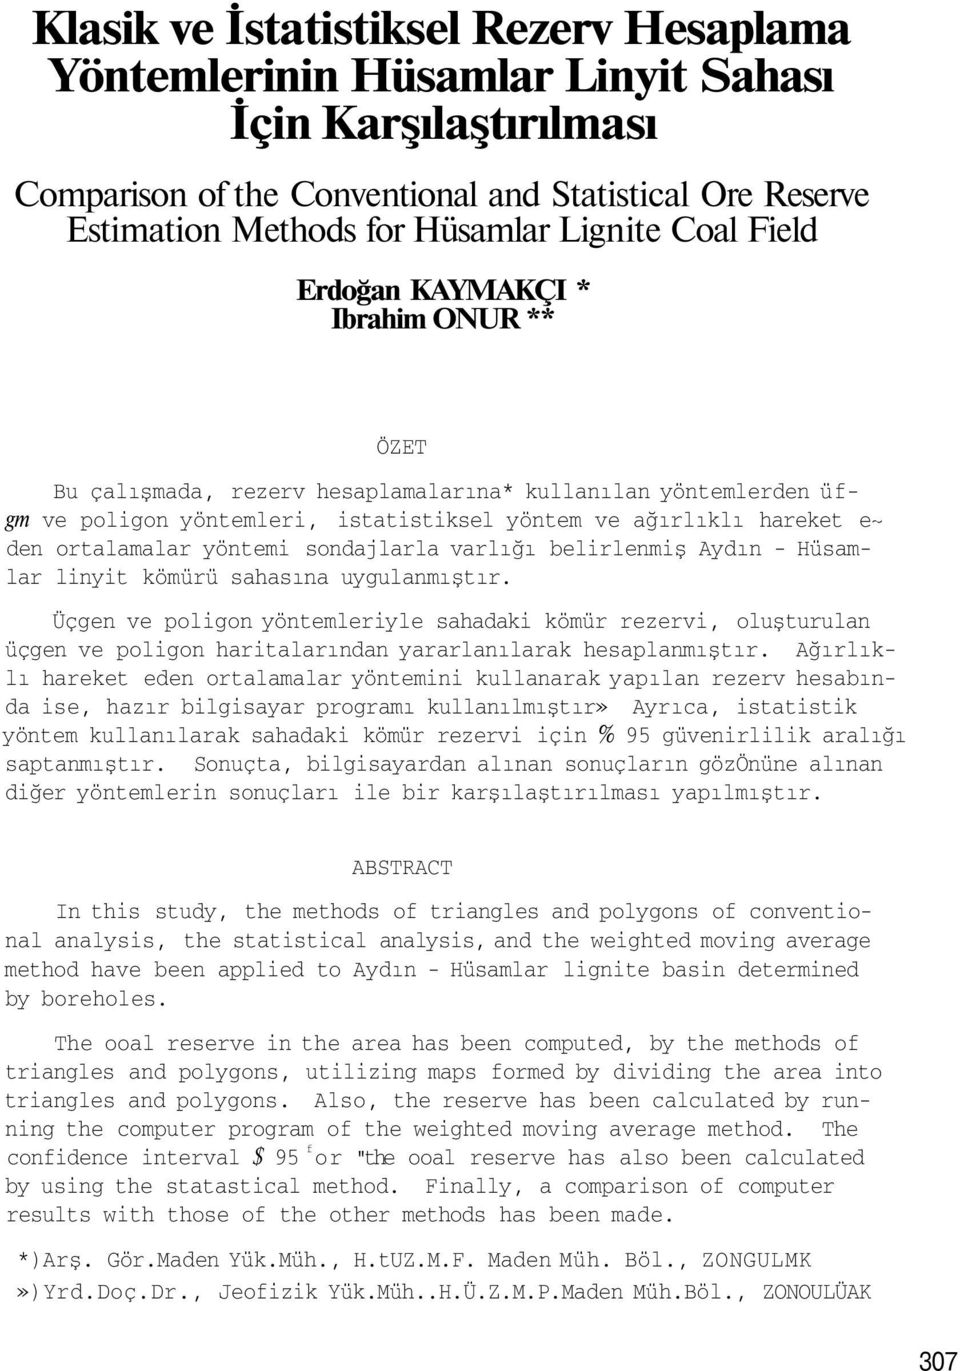 ortalamalar yöntemi sondajlarla varlığı belirlenmiş Aydın - Hüsamlar linyit kömürü sahasına uygulanmıştır.